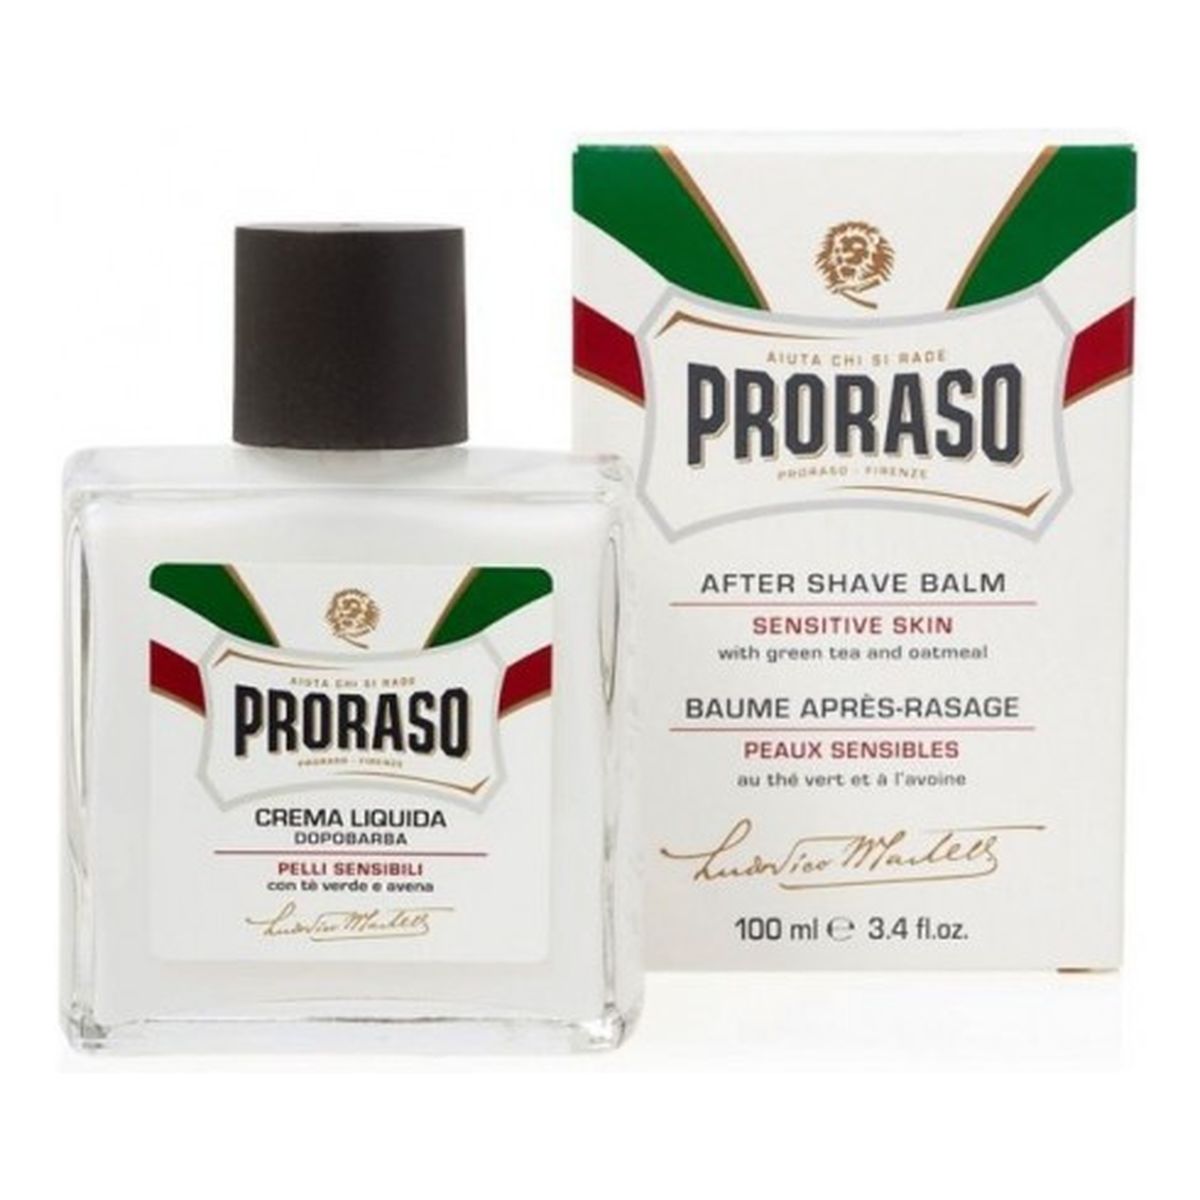 Proraso Crema Liquida Dopobarba orzeźwiający balsam po goleniu z olejkiem eukalipsowym i mentolem 100ml